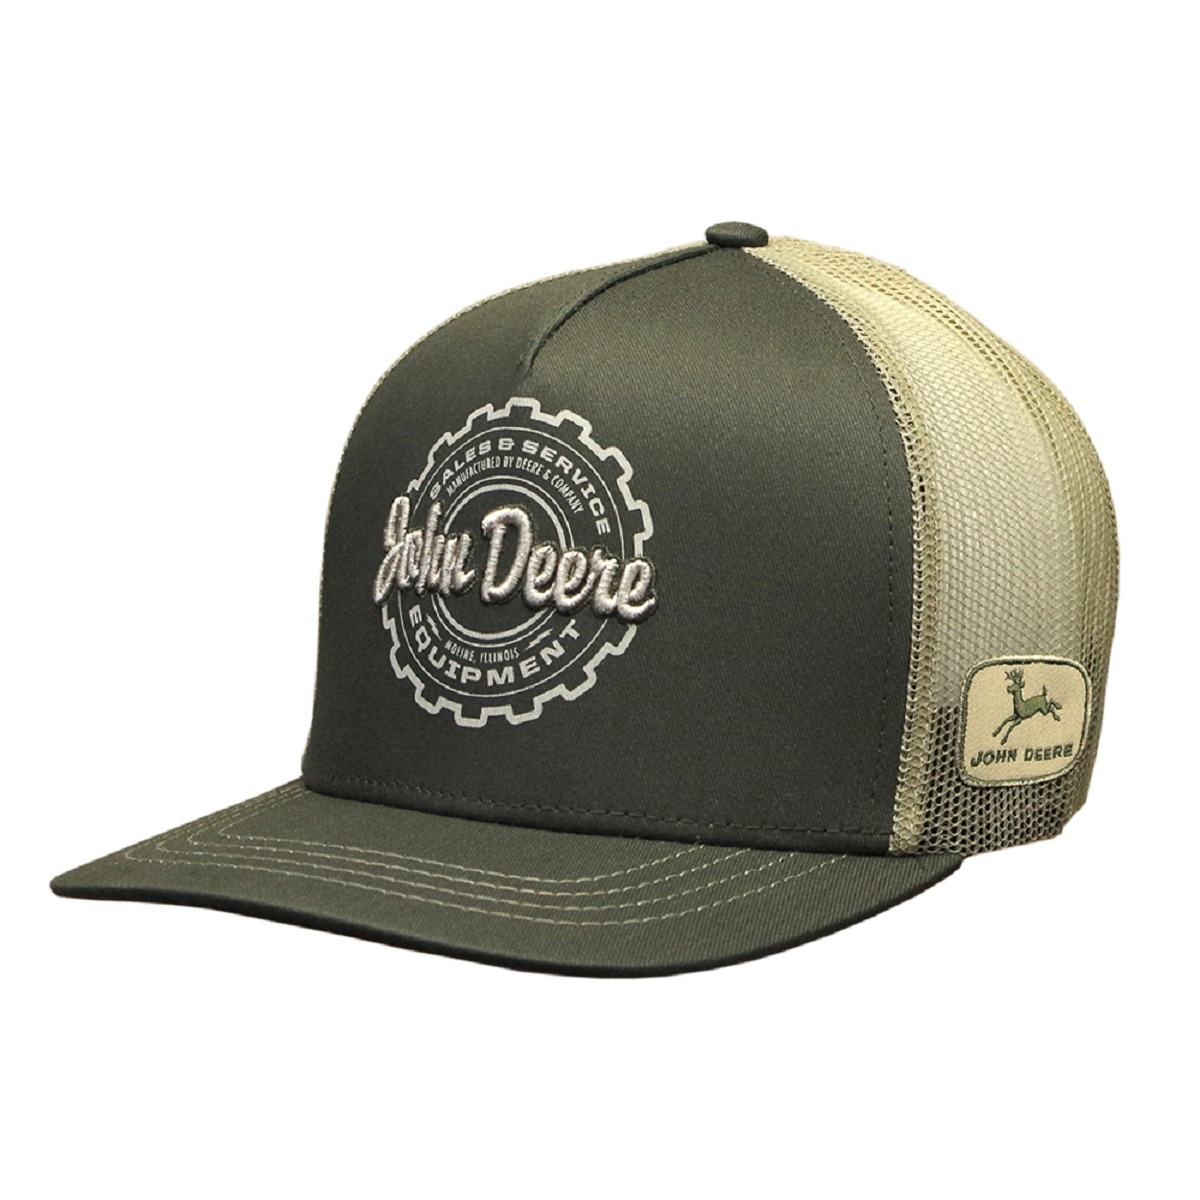 Cap Men's John Deere Reflective Hat LP67047 